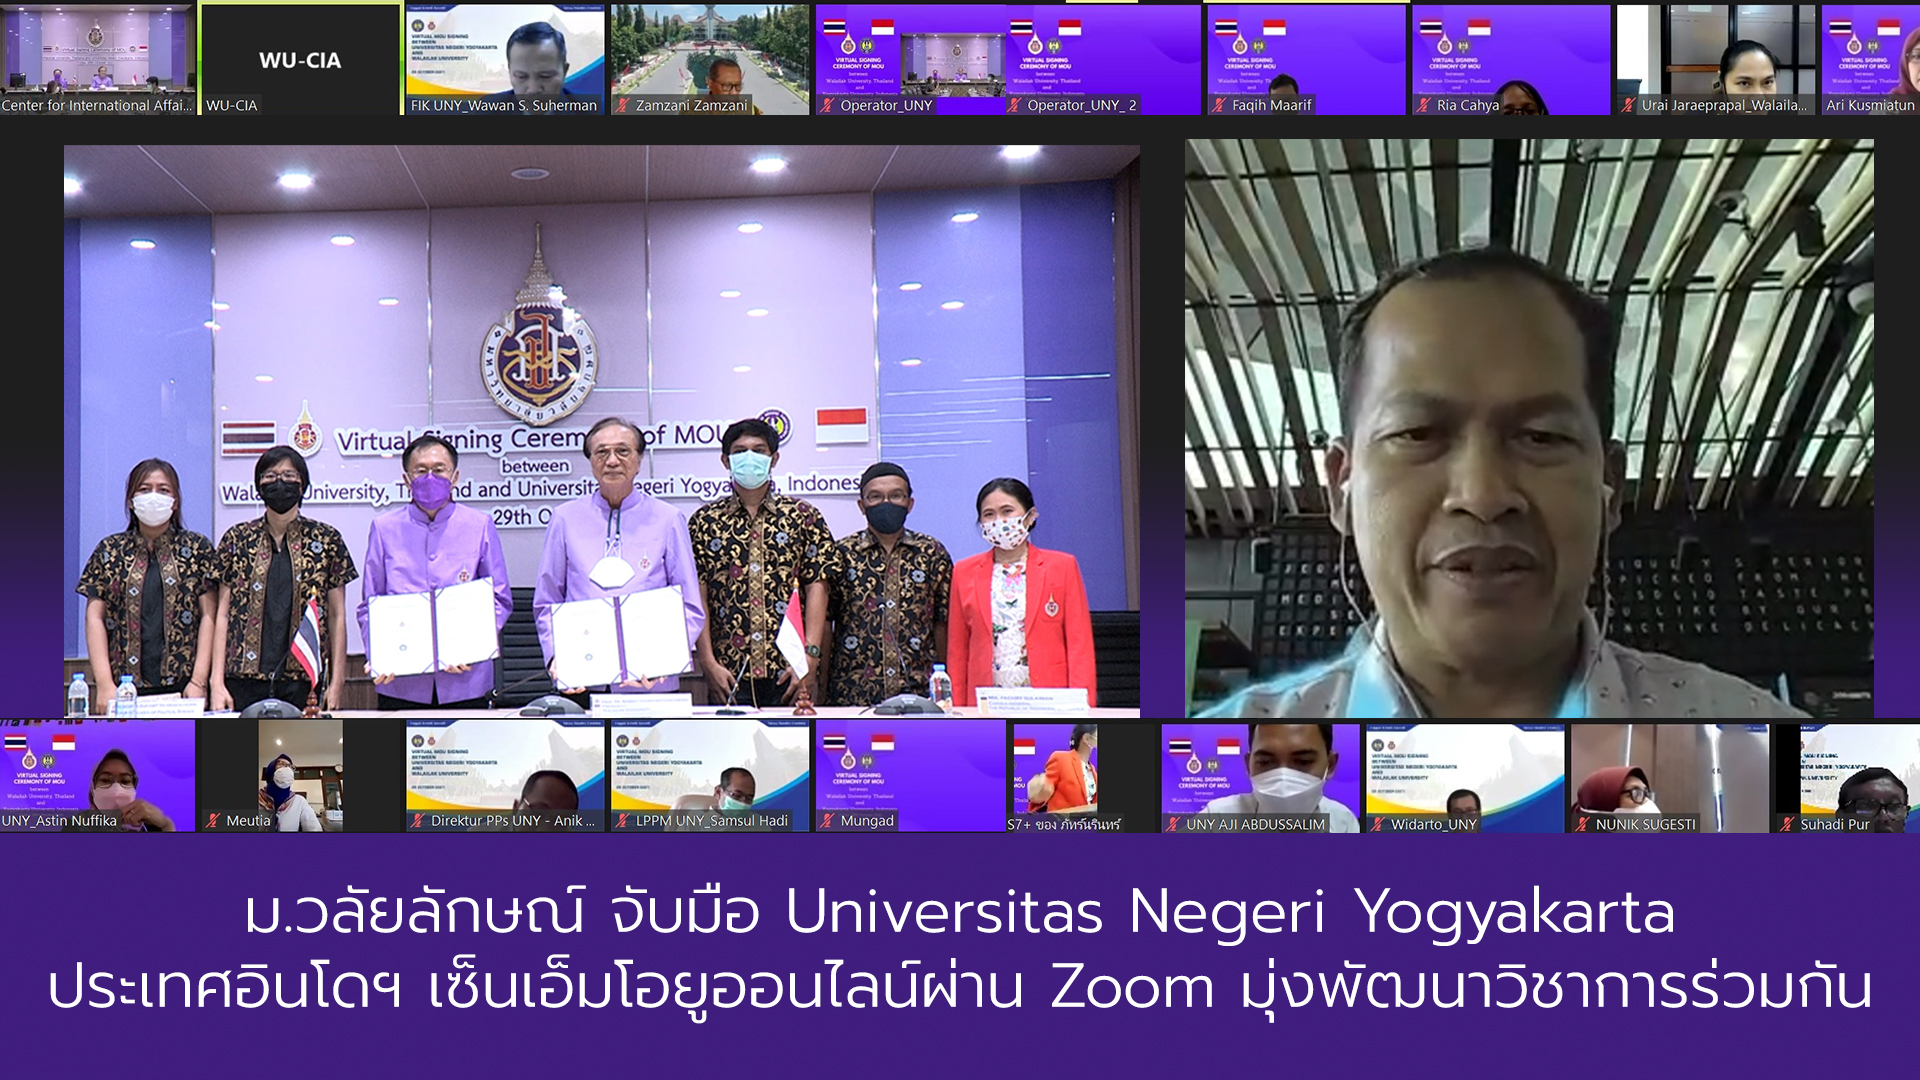 ม.วลัยลักษณ์ จับมือ Universitas Negeri Yogyakarta ประเทศอินโดฯ เซ็นเอ็มโอยูออนไลน์ผ่าน Zoom มุ่งพัฒนาวิชาการร่วมกัน